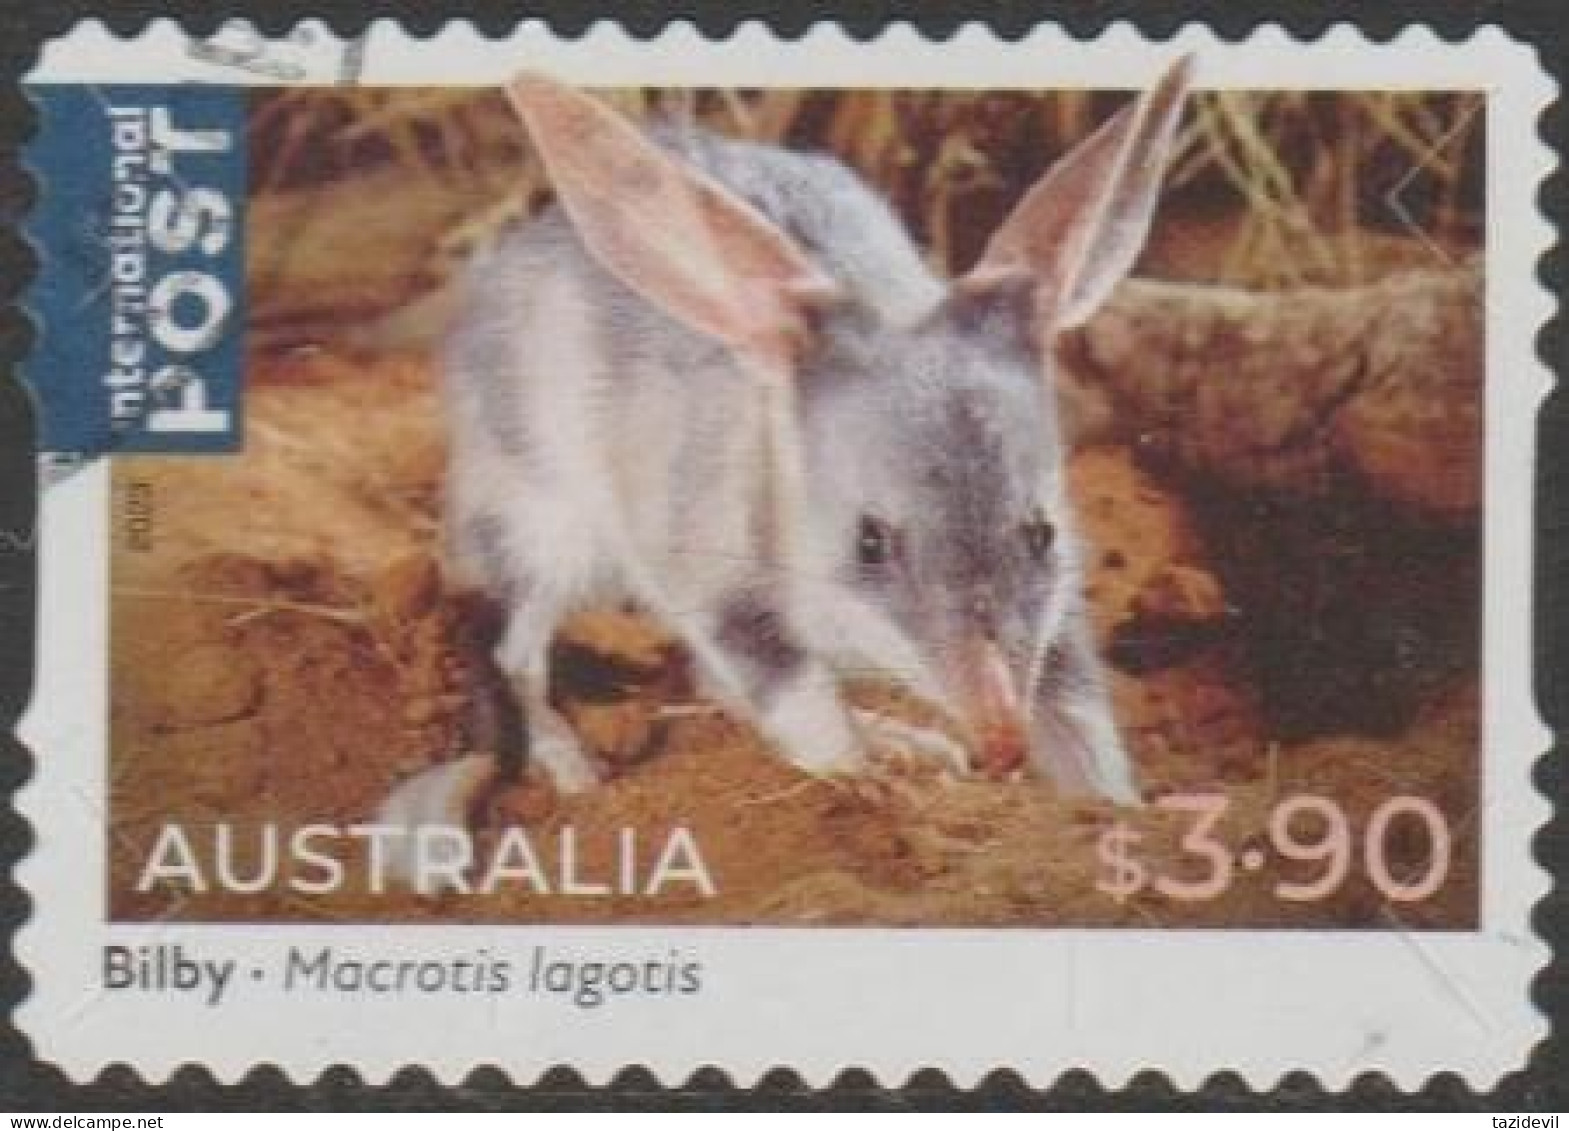 AUSTRALIA - DIE-CUT-USED 2023 $3.90 Native Animals, International - Bilby - Gebraucht